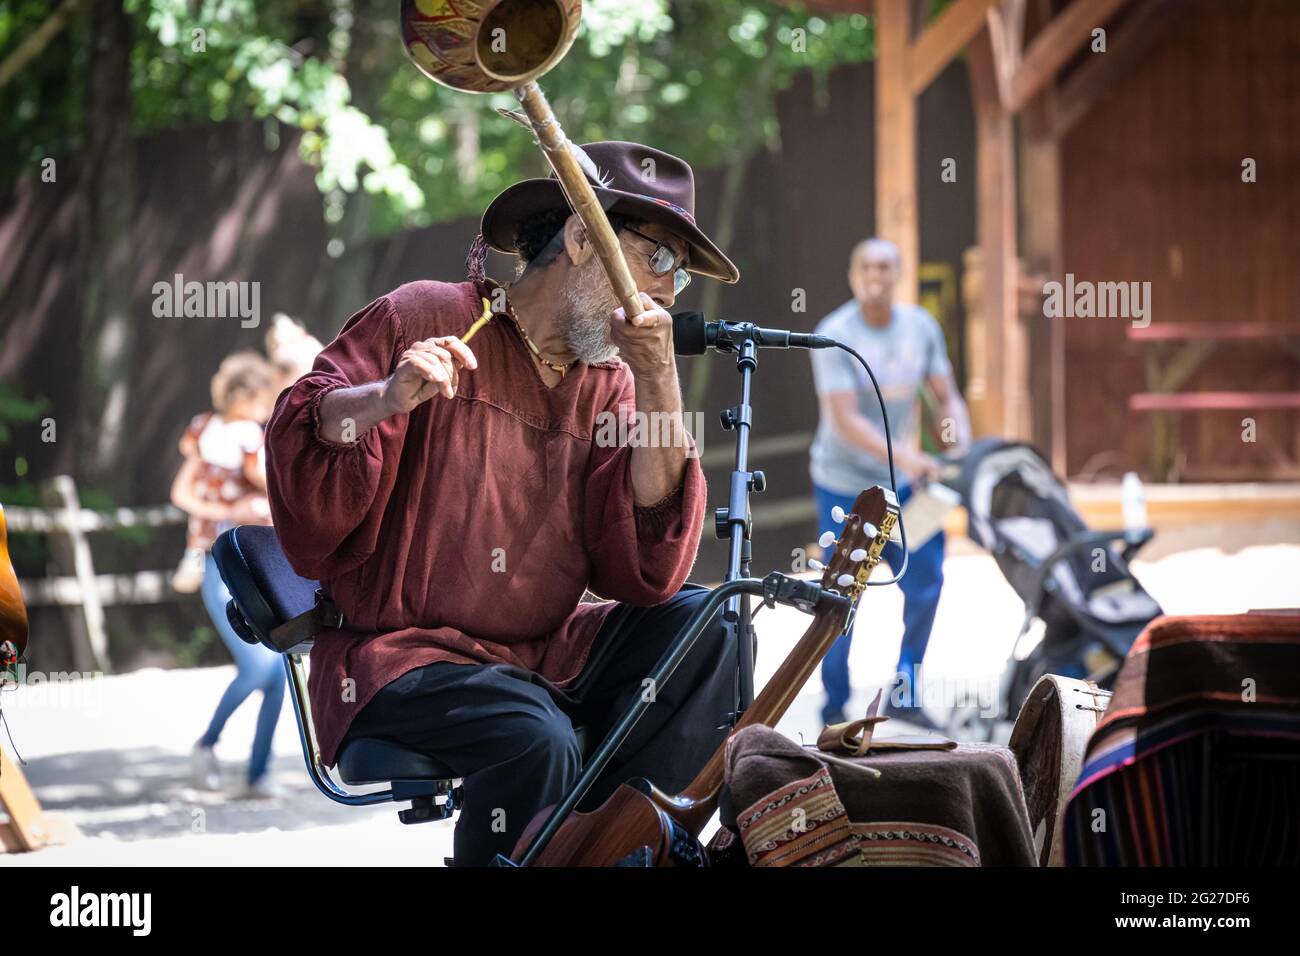 Un groupe d'hommes, Charry Garcia, faisant de la musique avec un berimbau brésilien au Georgia Renaissance Festival à Fairburn (Metro Atlanta), Géorgie. (ÉTATS-UNIS) Banque D'Images